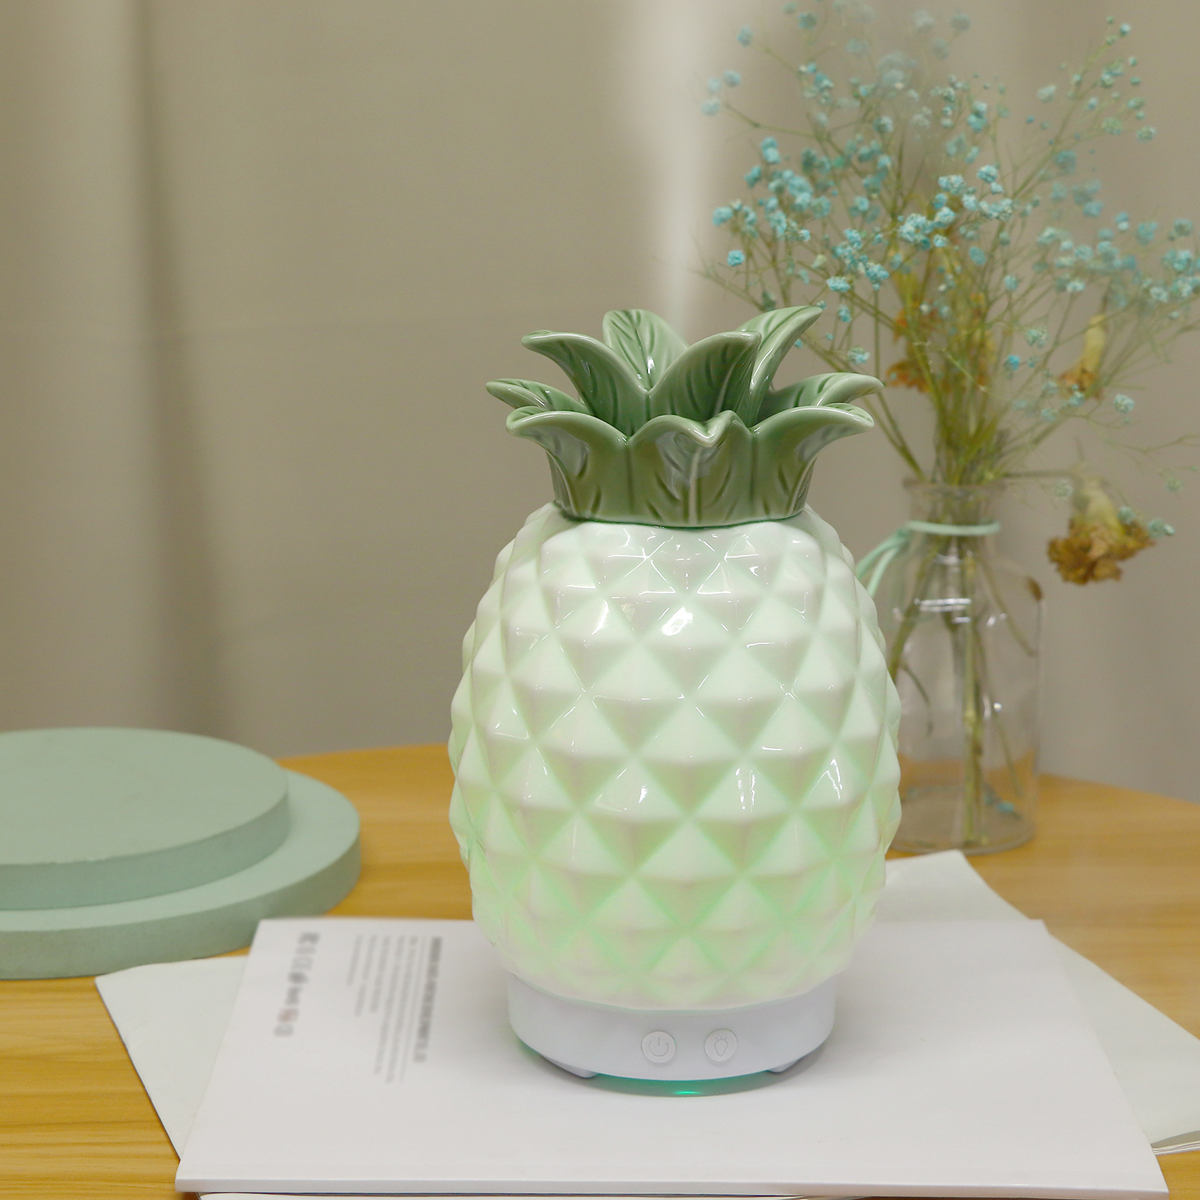 pineapple ceramic aroma diffuser